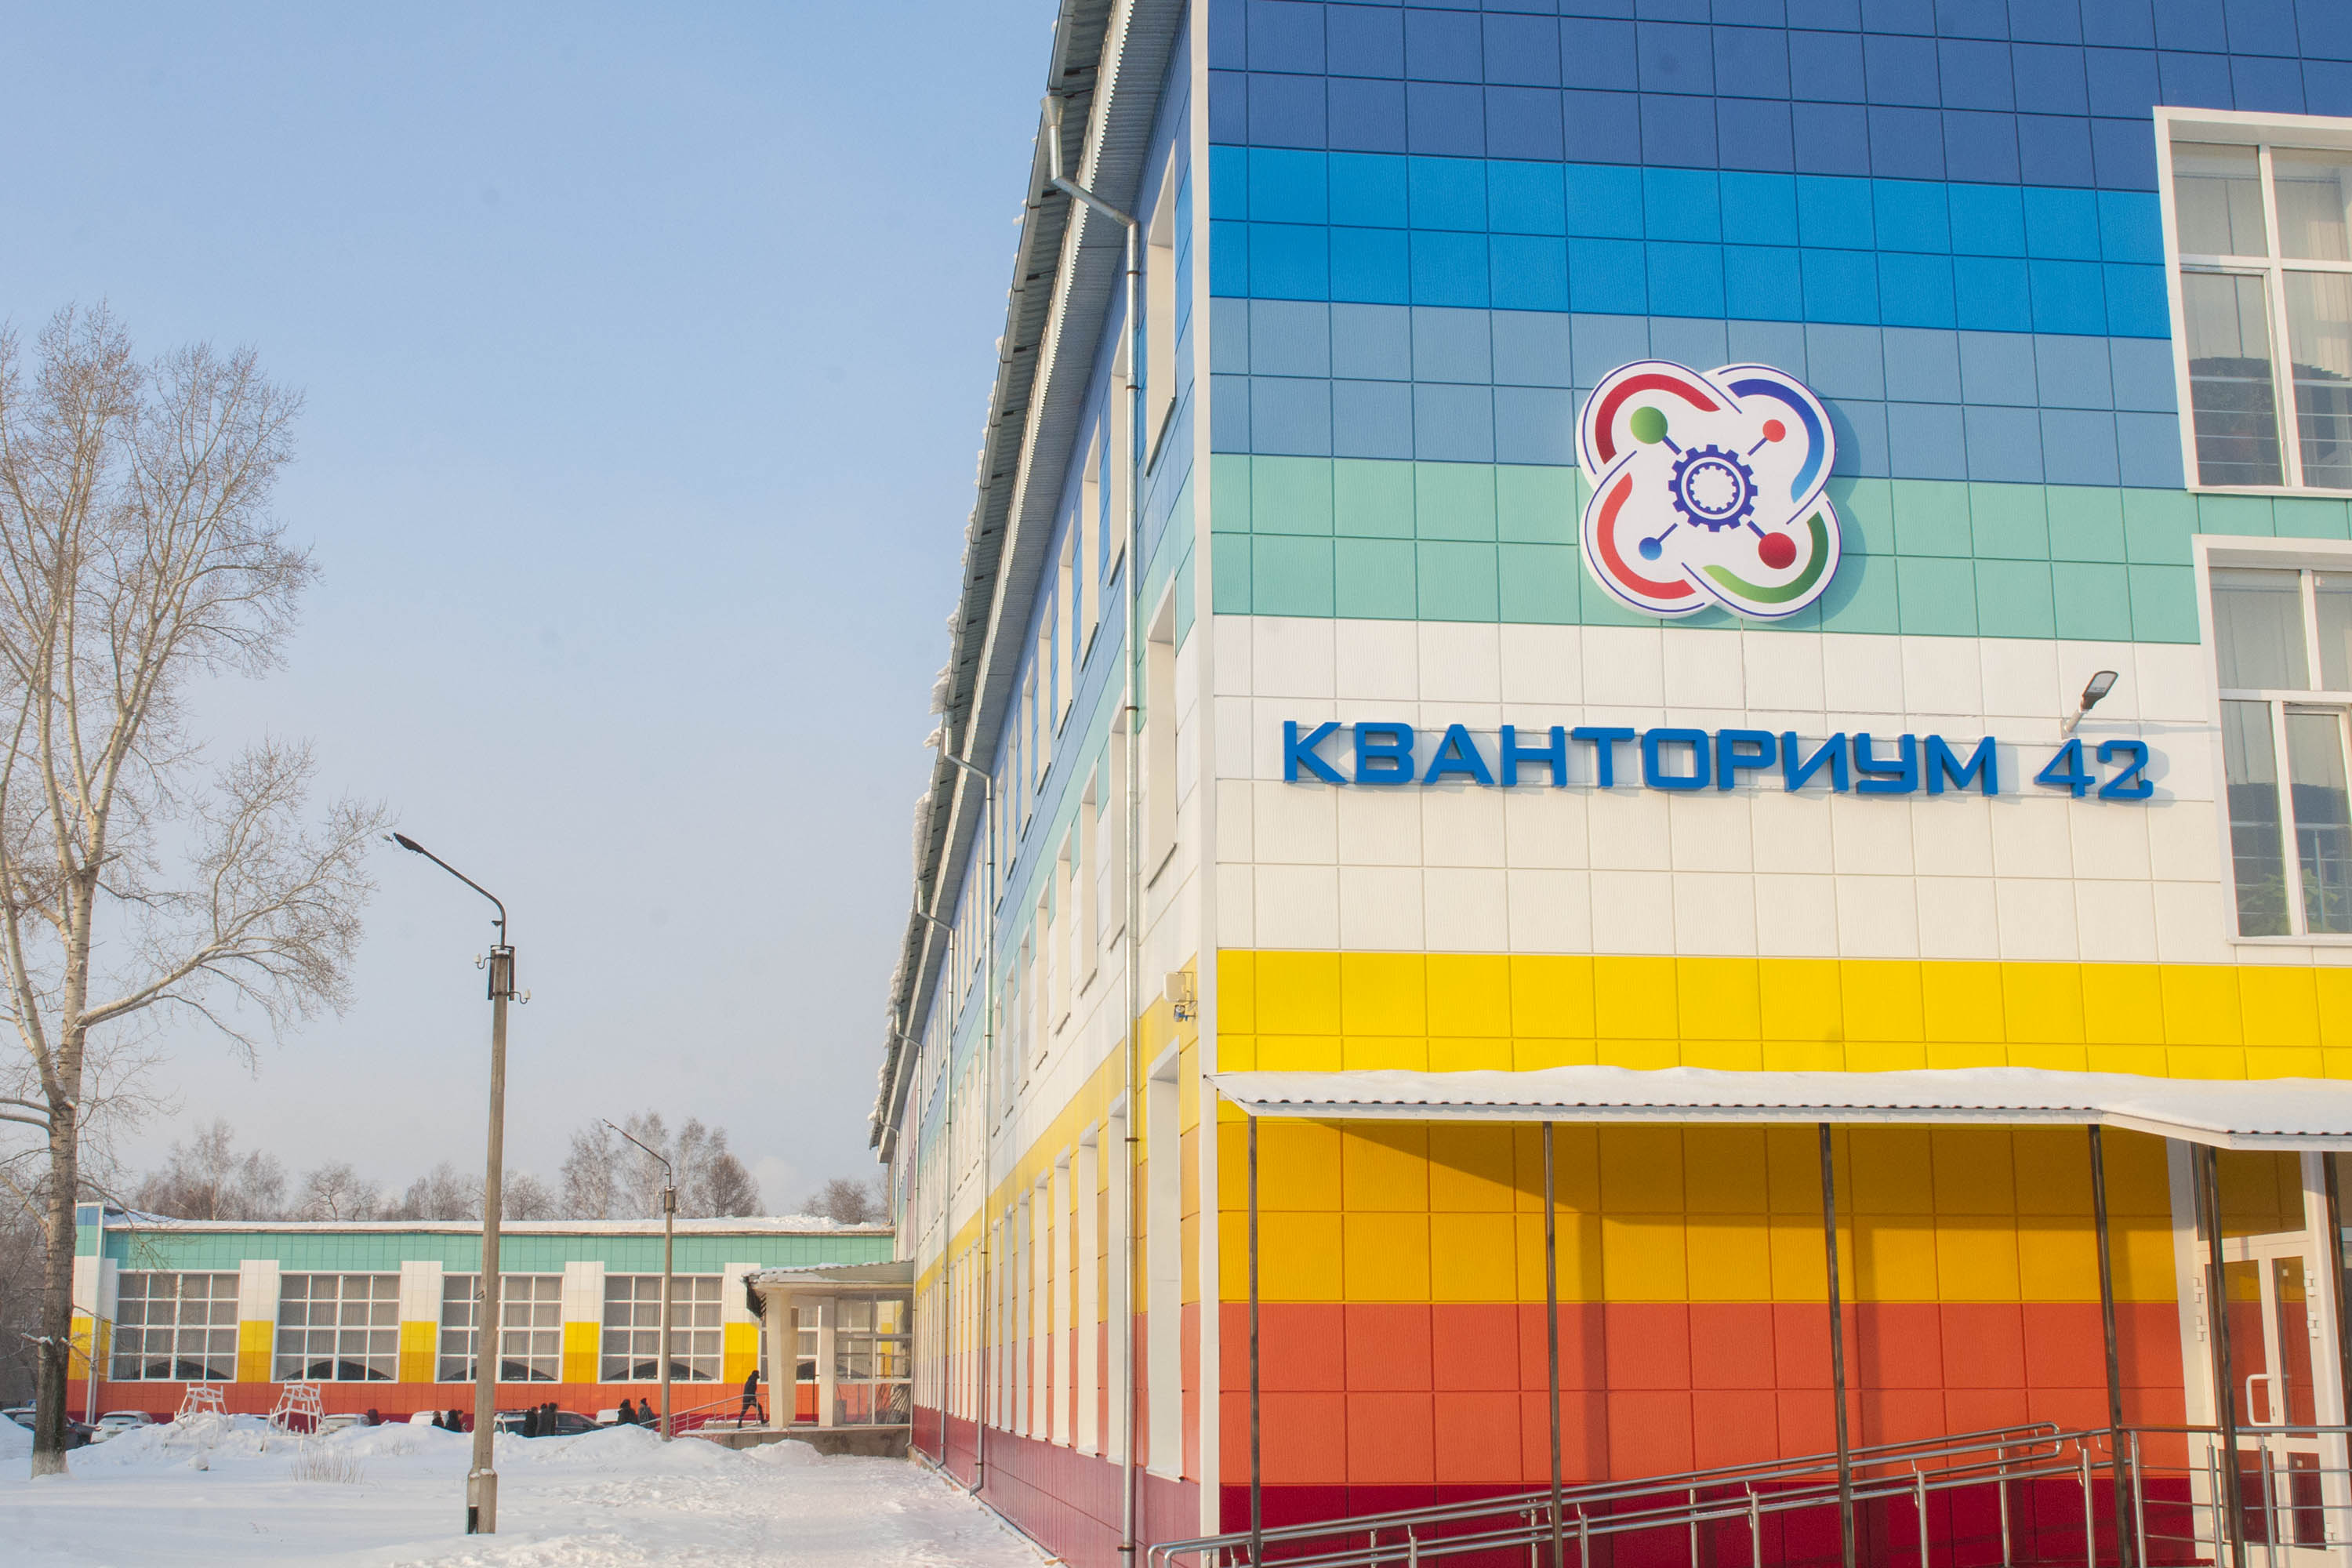 Кемеровский детский технопарк «Кванториум 42» объявляет набор обучающихся на 2022 год